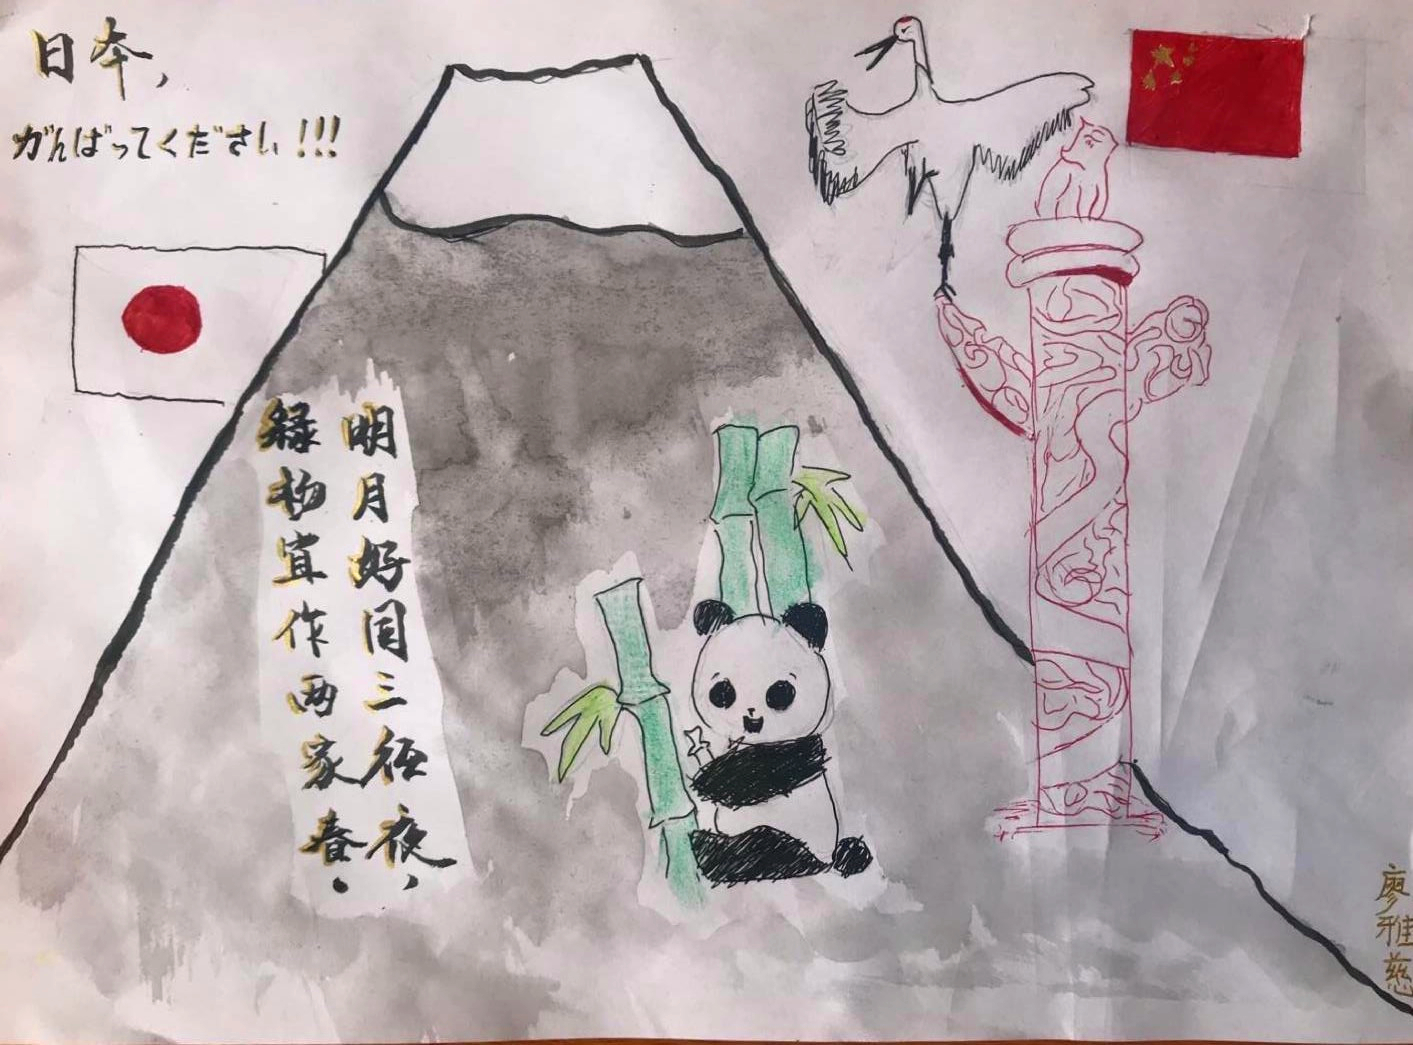 桂林市の児童らが日本への感謝と激励を絵で表現 広西チワン族自治区 写真10枚 国際ニュース Afpbb News